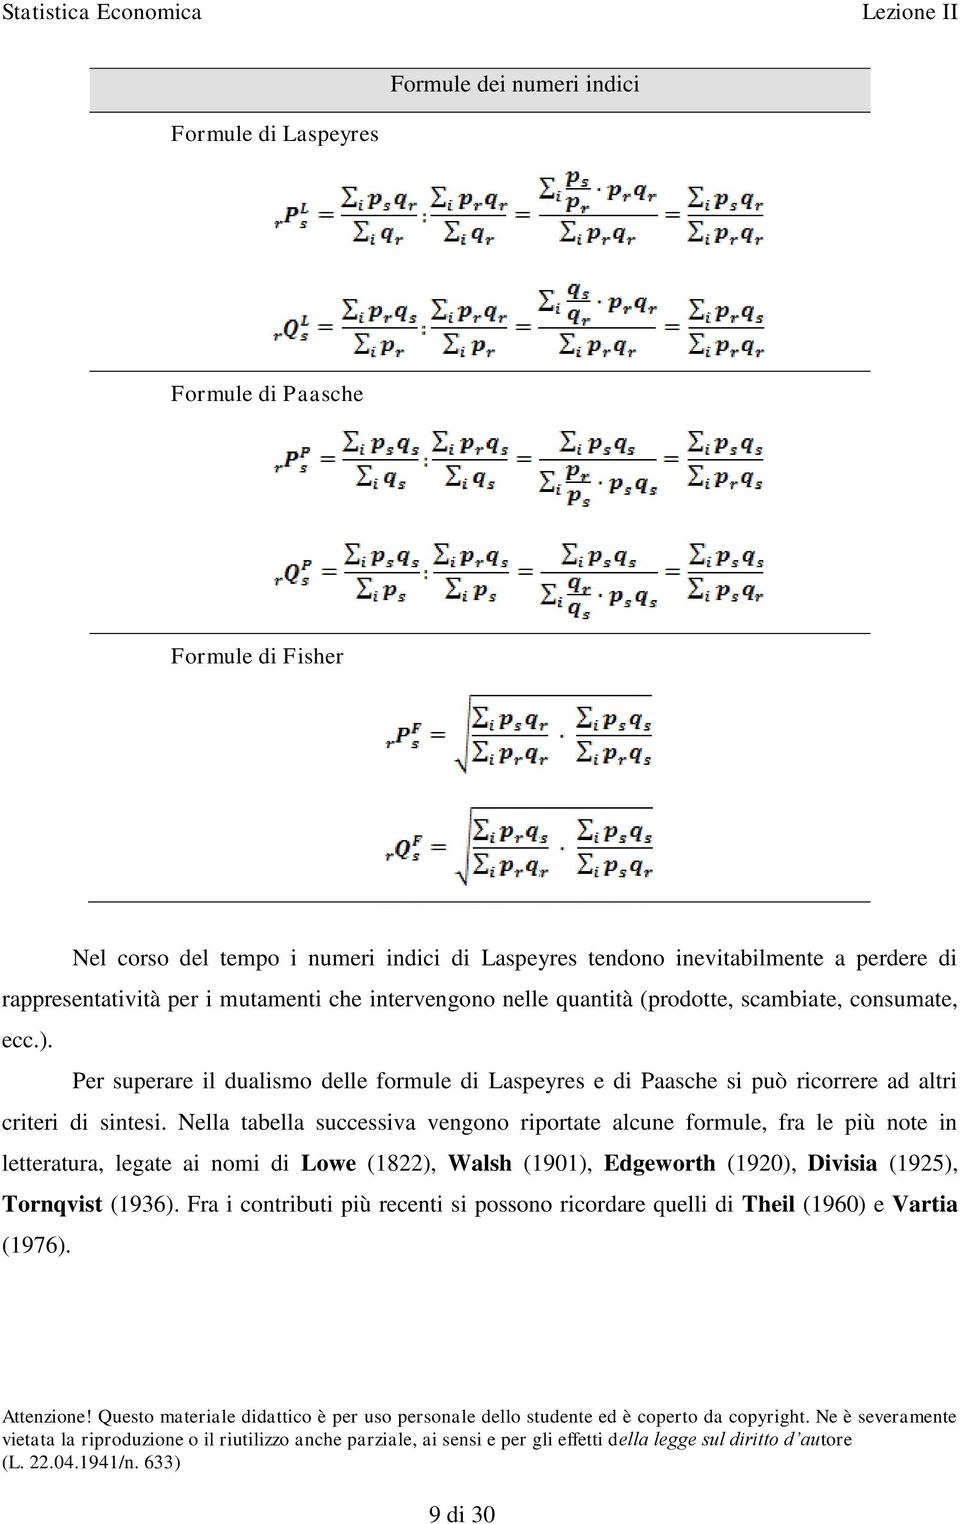 Per superare il dualismo delle formule di Laspeyres e di Paasche si può ricorrere ad altri criteri di sintesi.